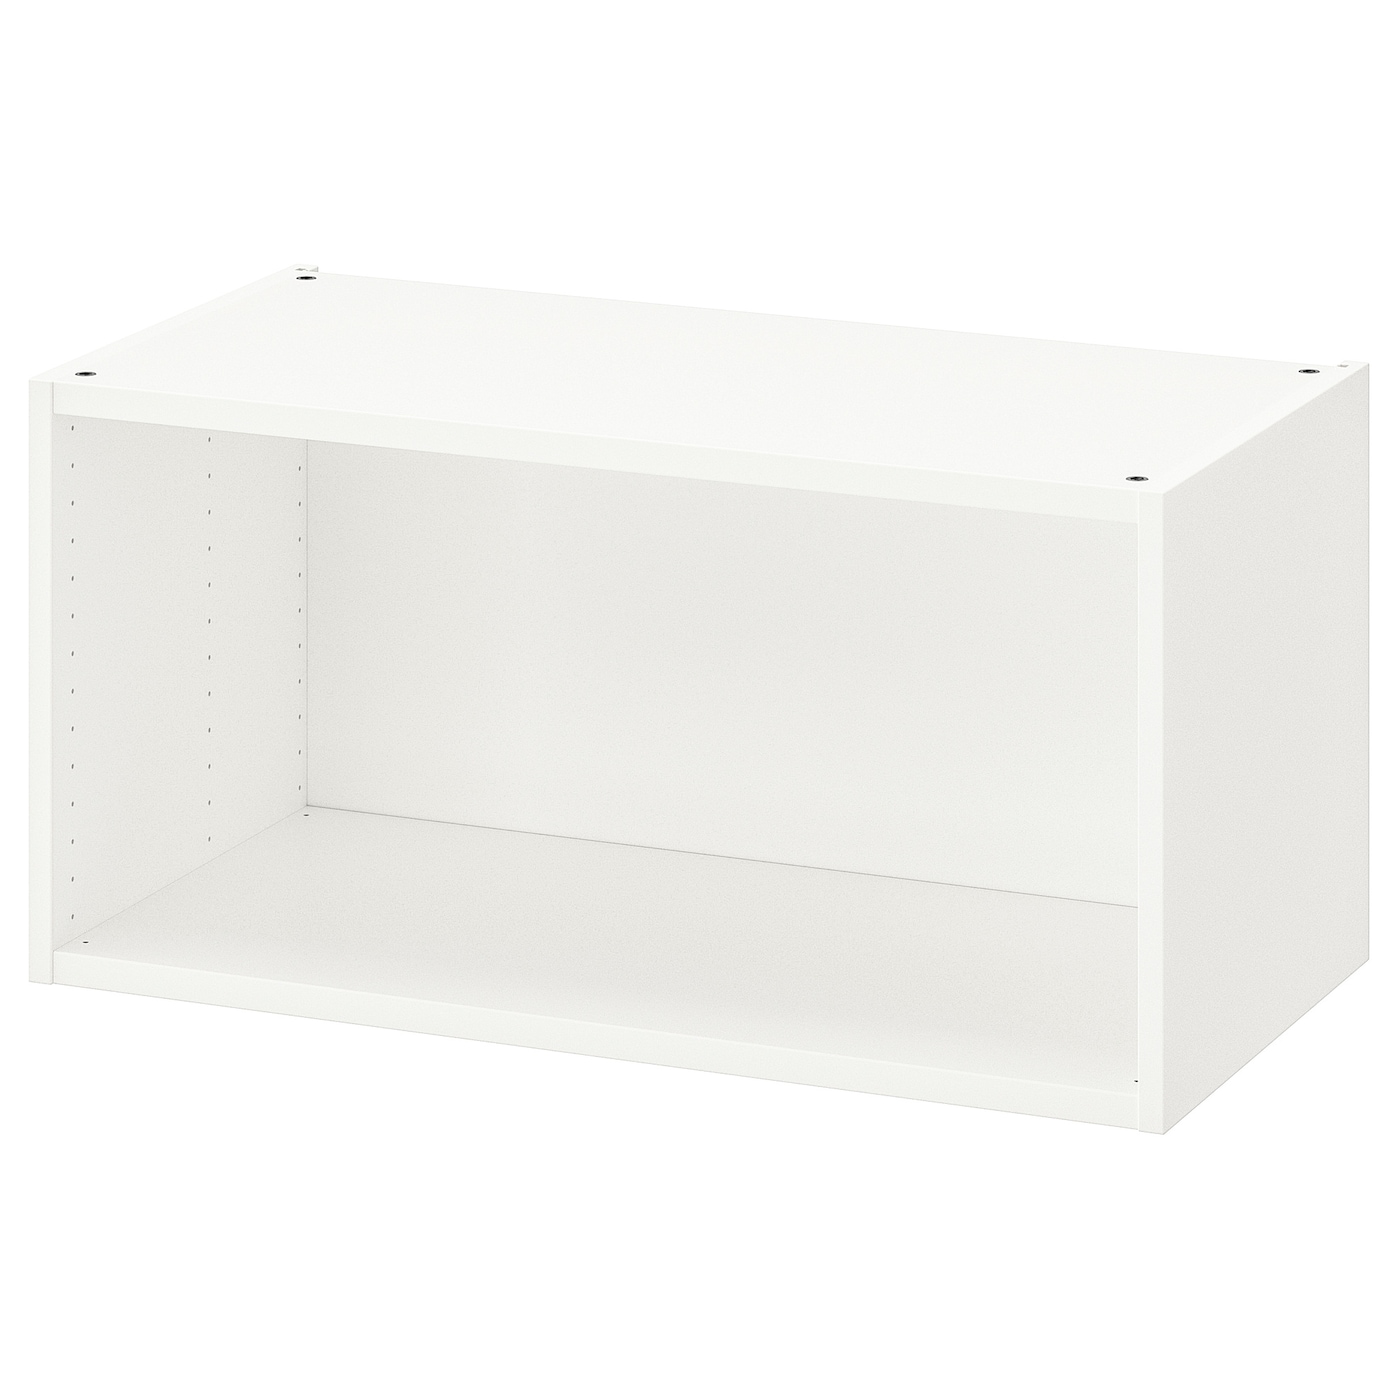 Каркас гардероба - PLATSA IKEA/ПЛАТСА ИКЕА, 40х40х80 см, белый